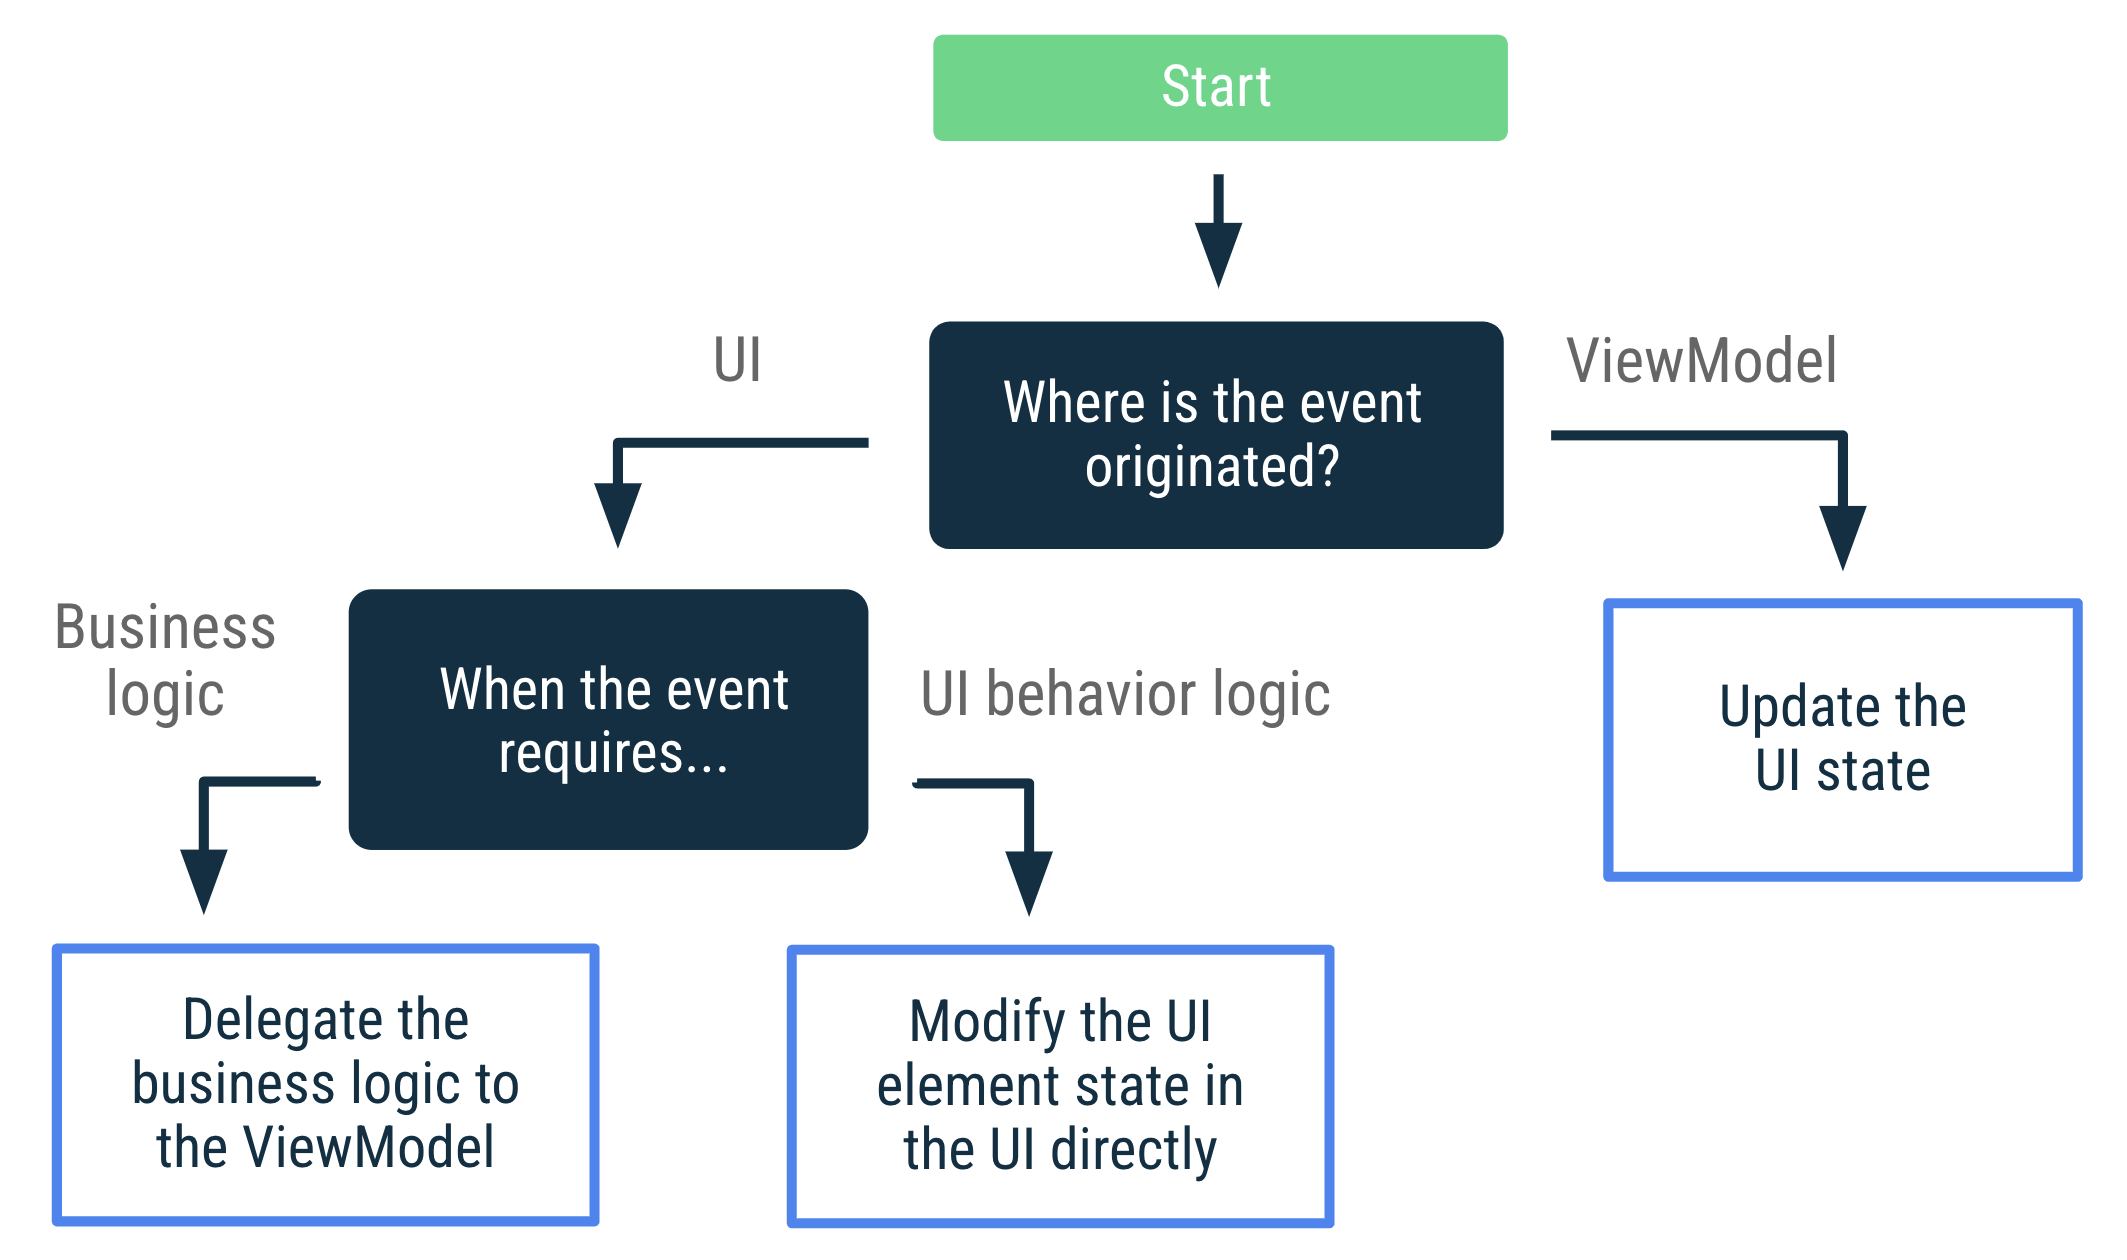 如果事件源自於 ViewModel，請更新 UI 狀態。如果事件源自 UI 且需要商業邏輯，請將商業邏輯指派給 ViewModel。如果事件源自 UI 且需要 UI 行為邏輯，請直接在 UI 修改 UI 元素狀態。